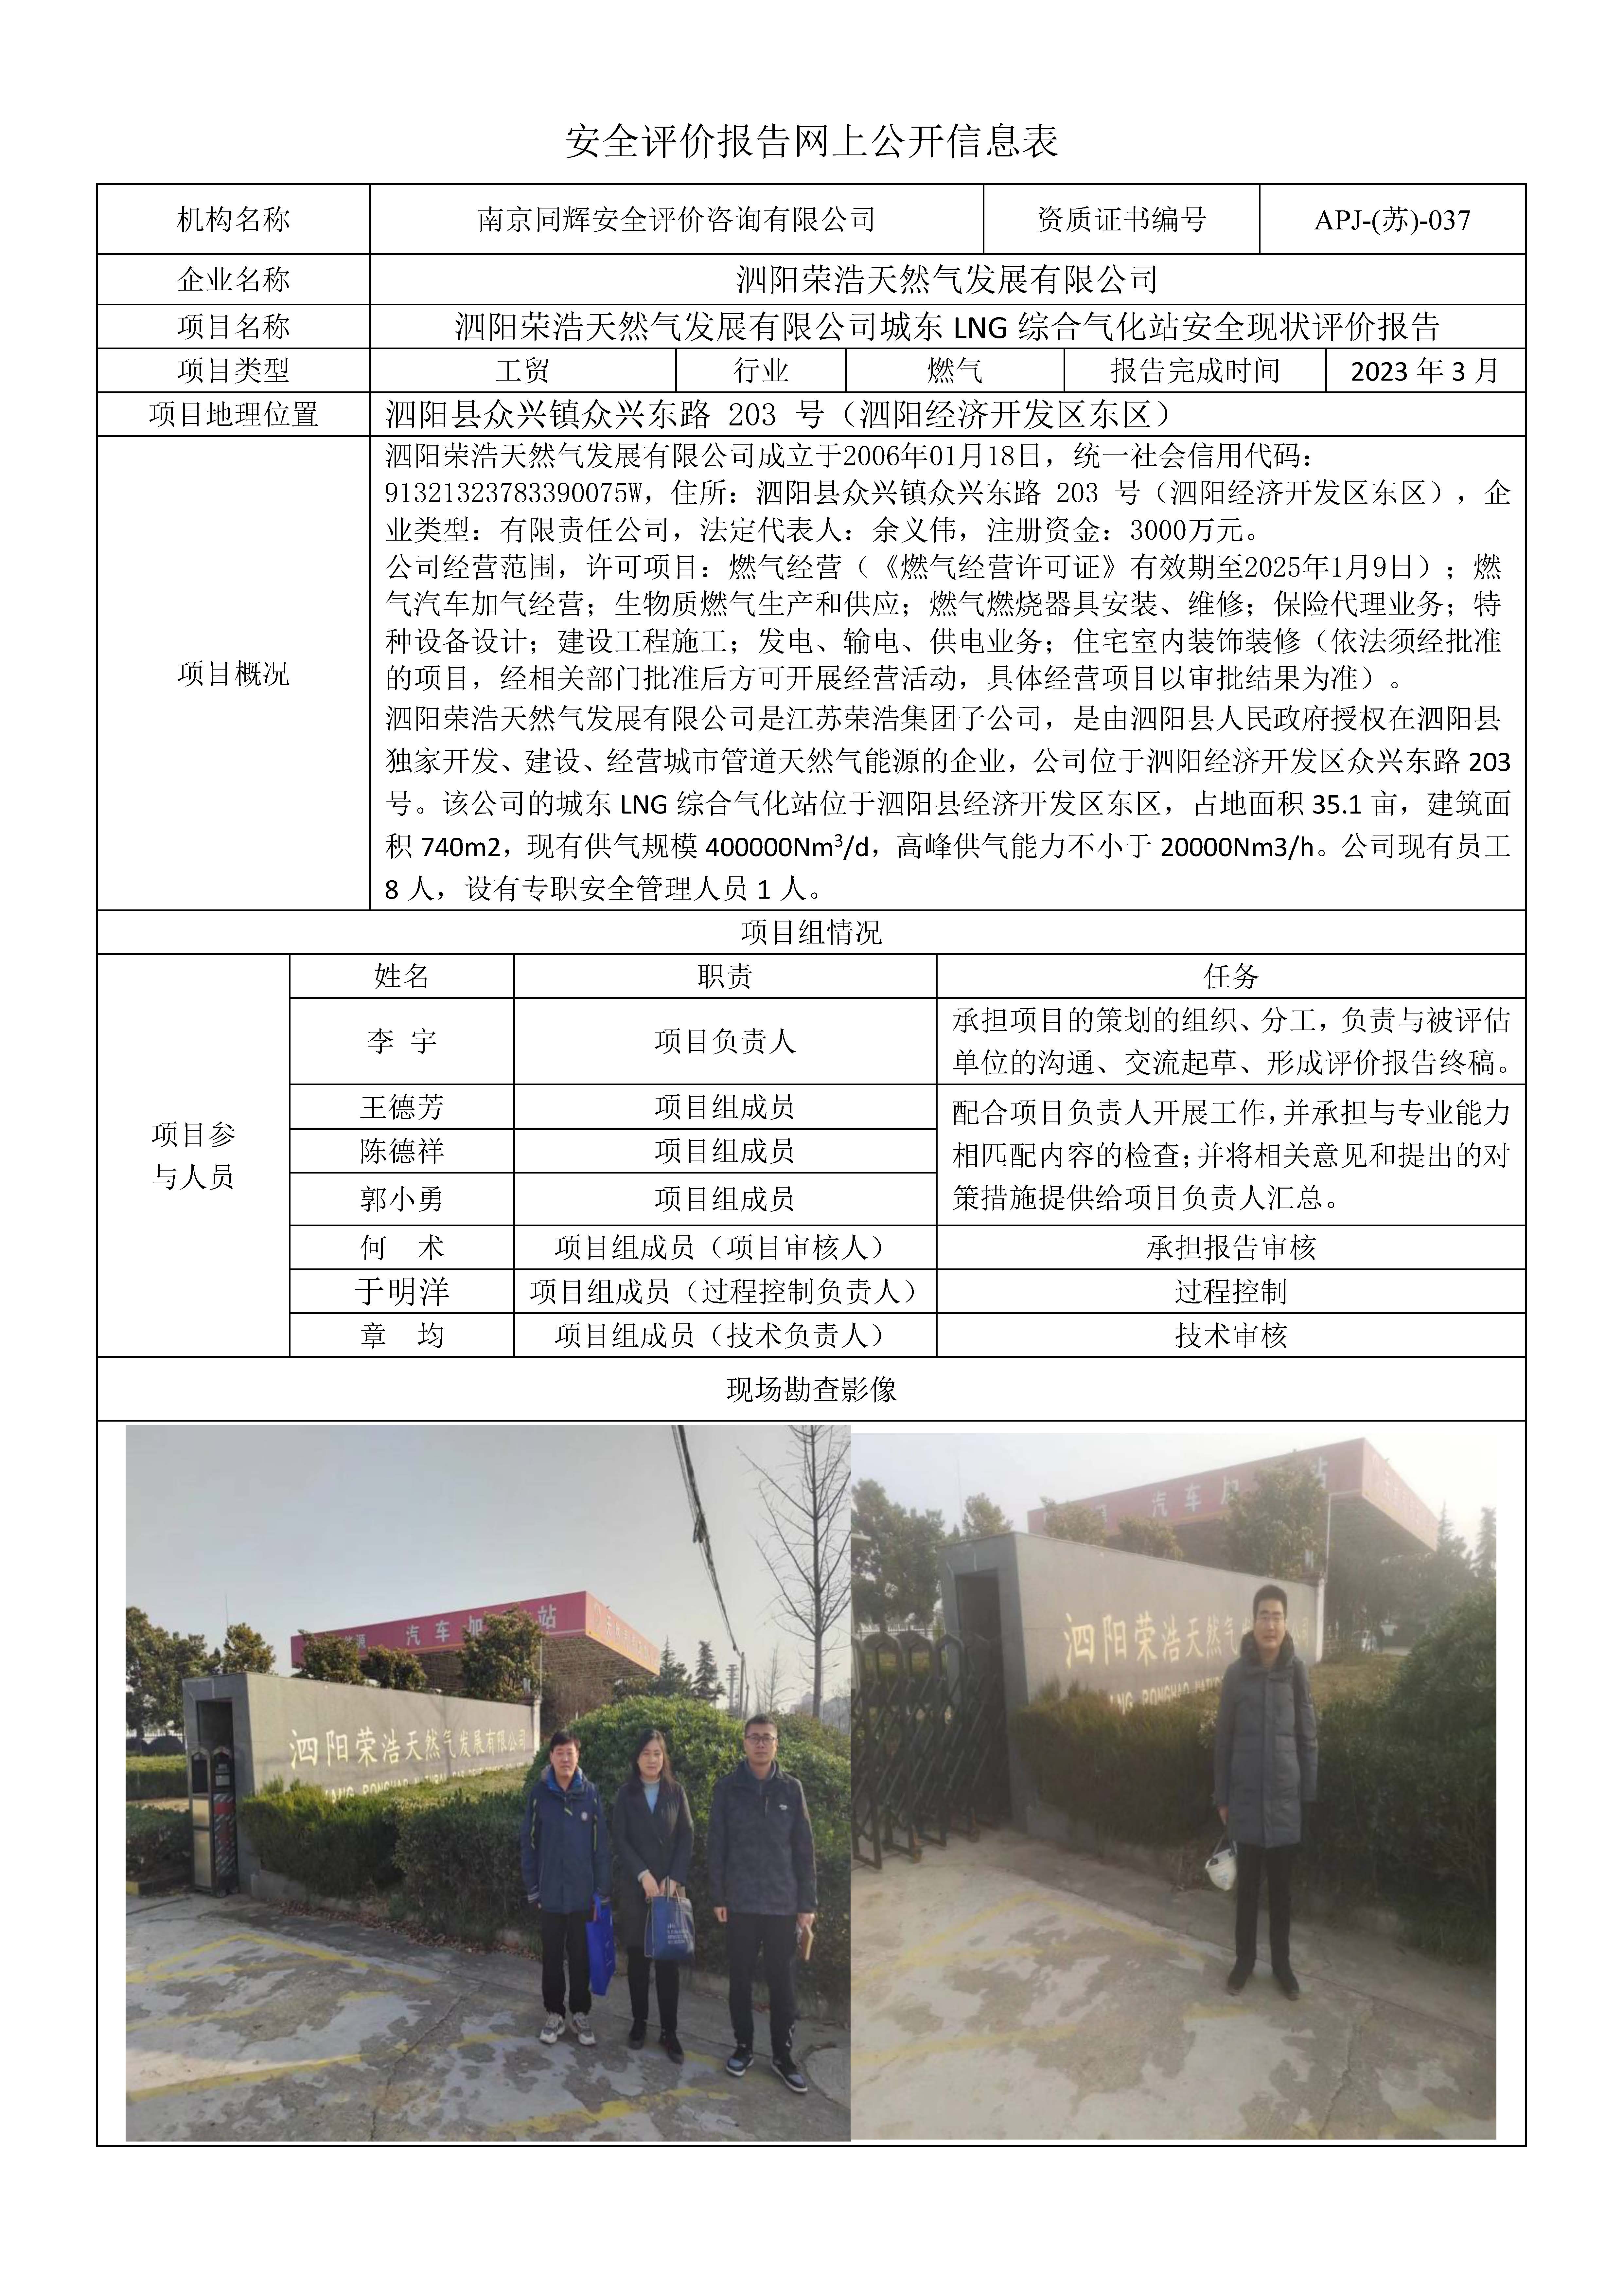 9泗阳荣浩城东 LNG 化站现状报告  网上公开信息表.jpg